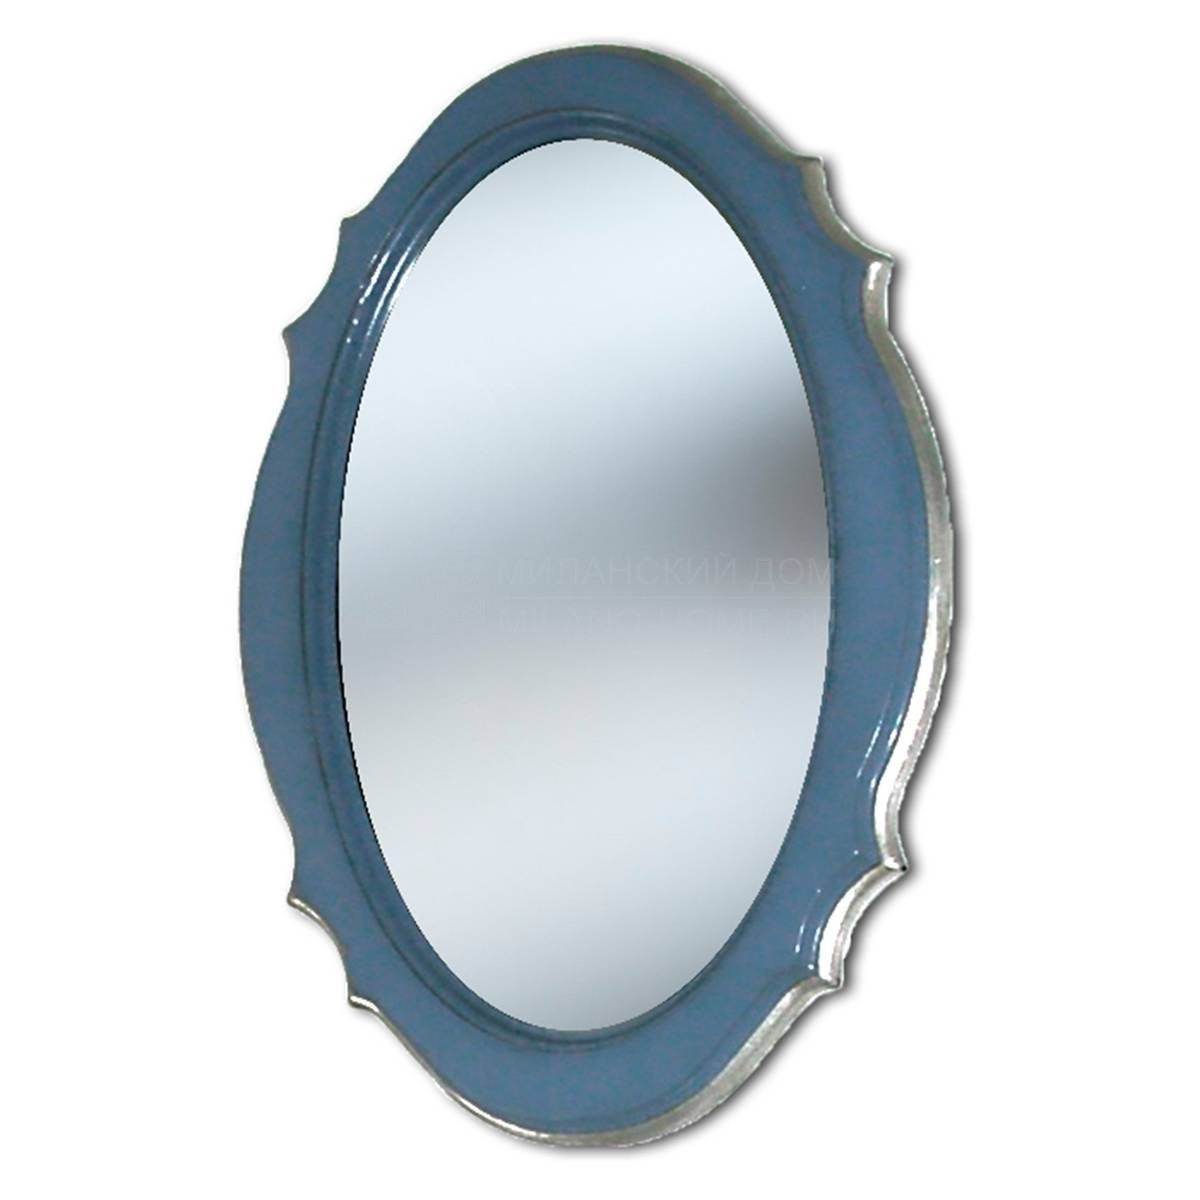 Зеркало настенное Minion/21060.250 из Италии фабрики FRANCESCO MOLON